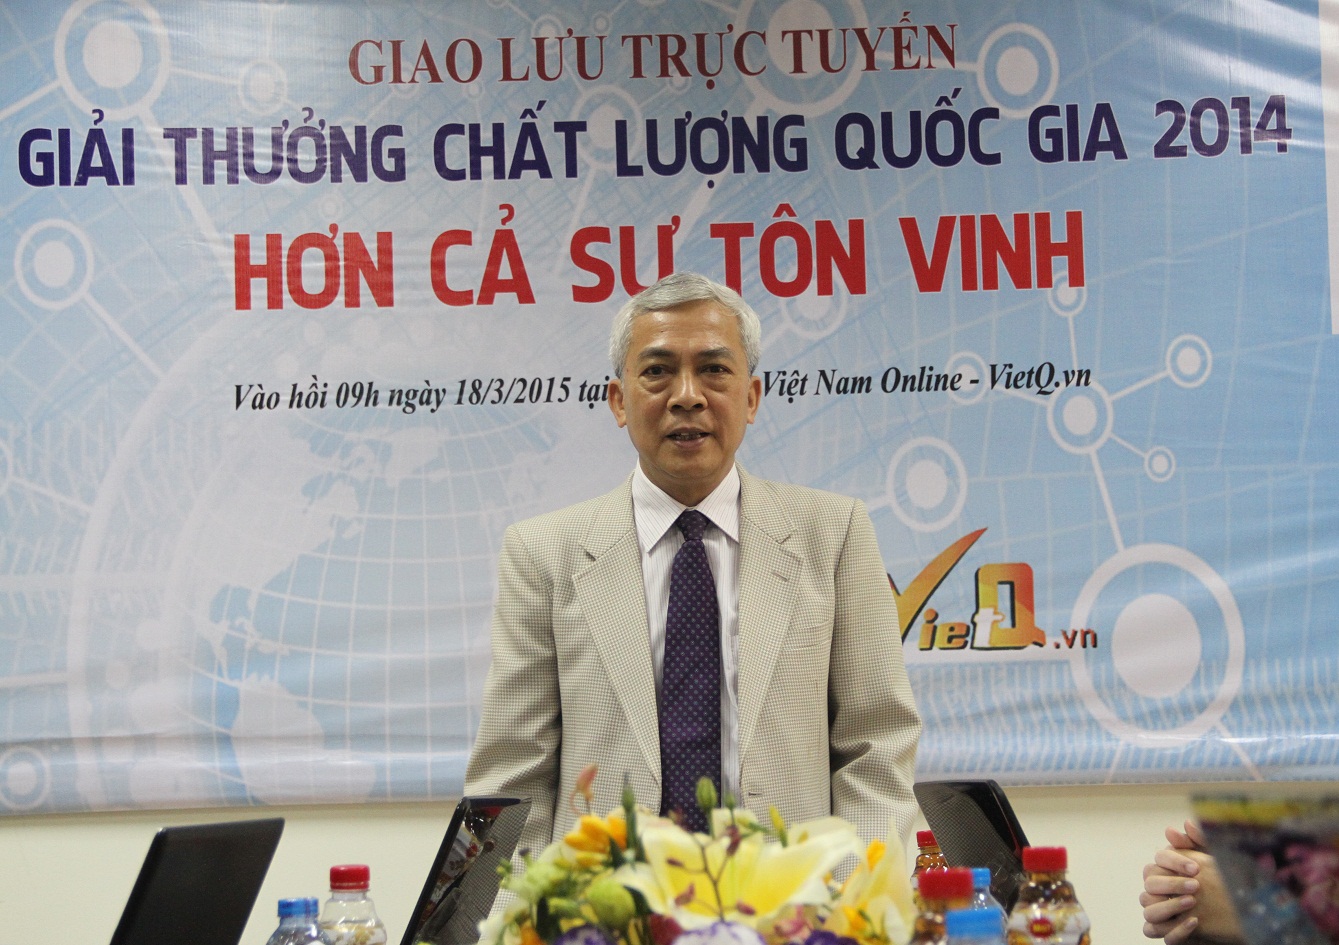 TS Ngô Quý Việt -  Tổng cục trưởng Tổng cục Tiêu chuẩn Đo lường Chất lượng, Phó chủ tịch Hội đồng Quốc gia GTCLQG